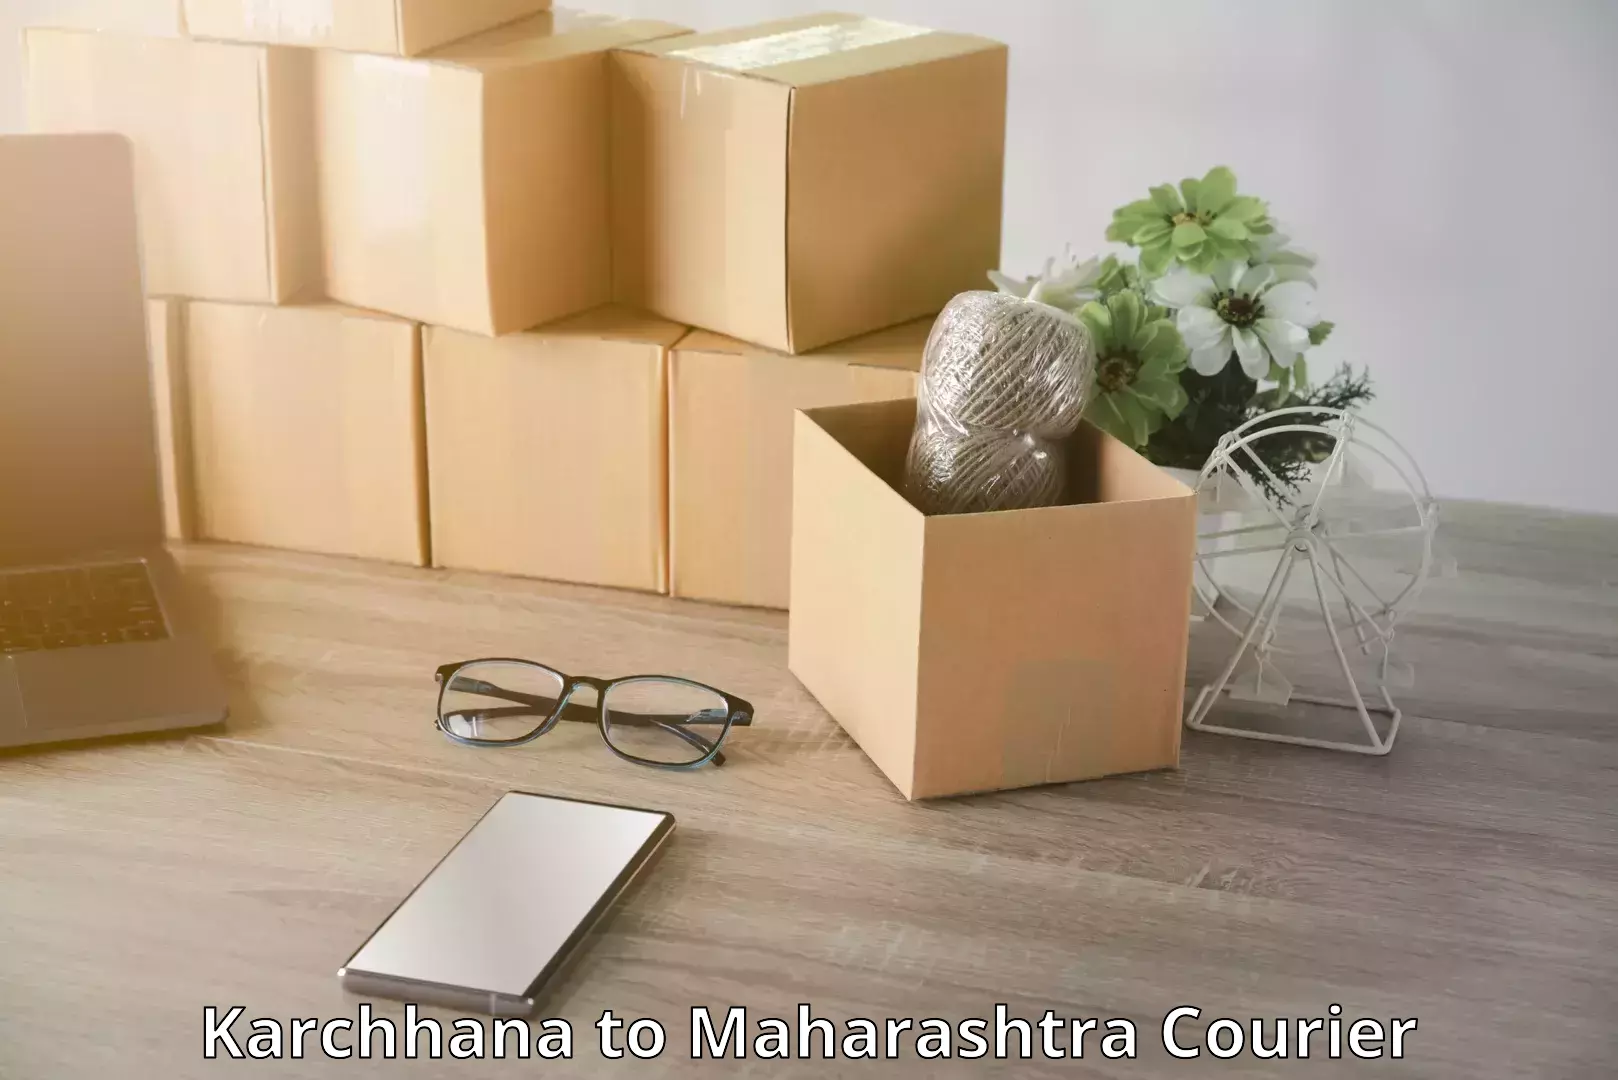 Rural baggage transport Karchhana to Maharashtra